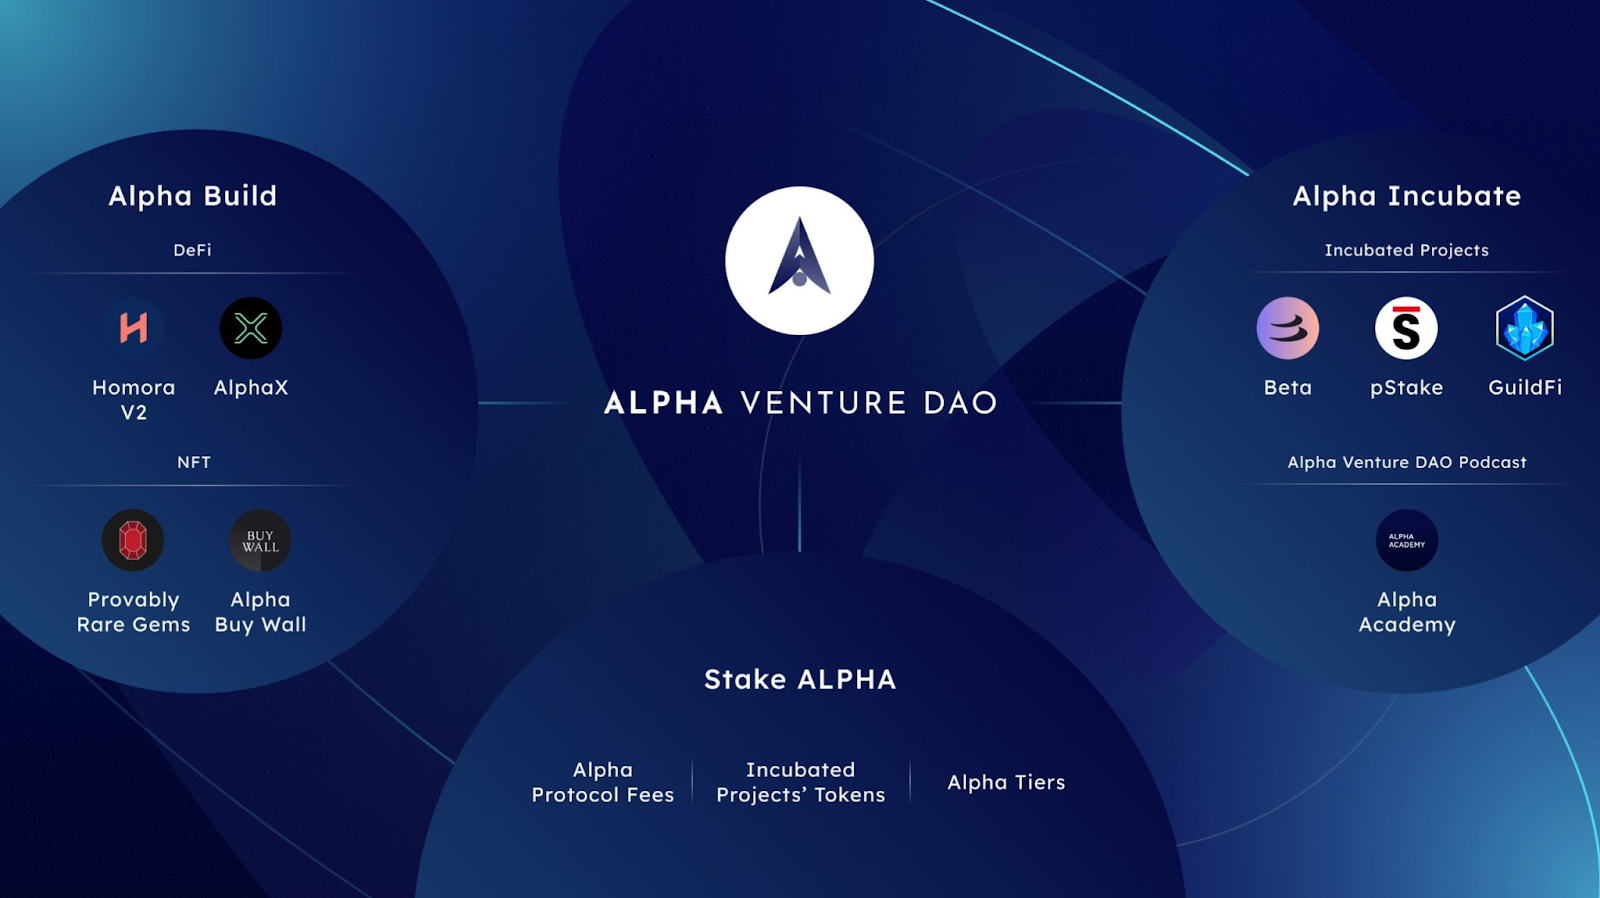 Alpha Venture DAO